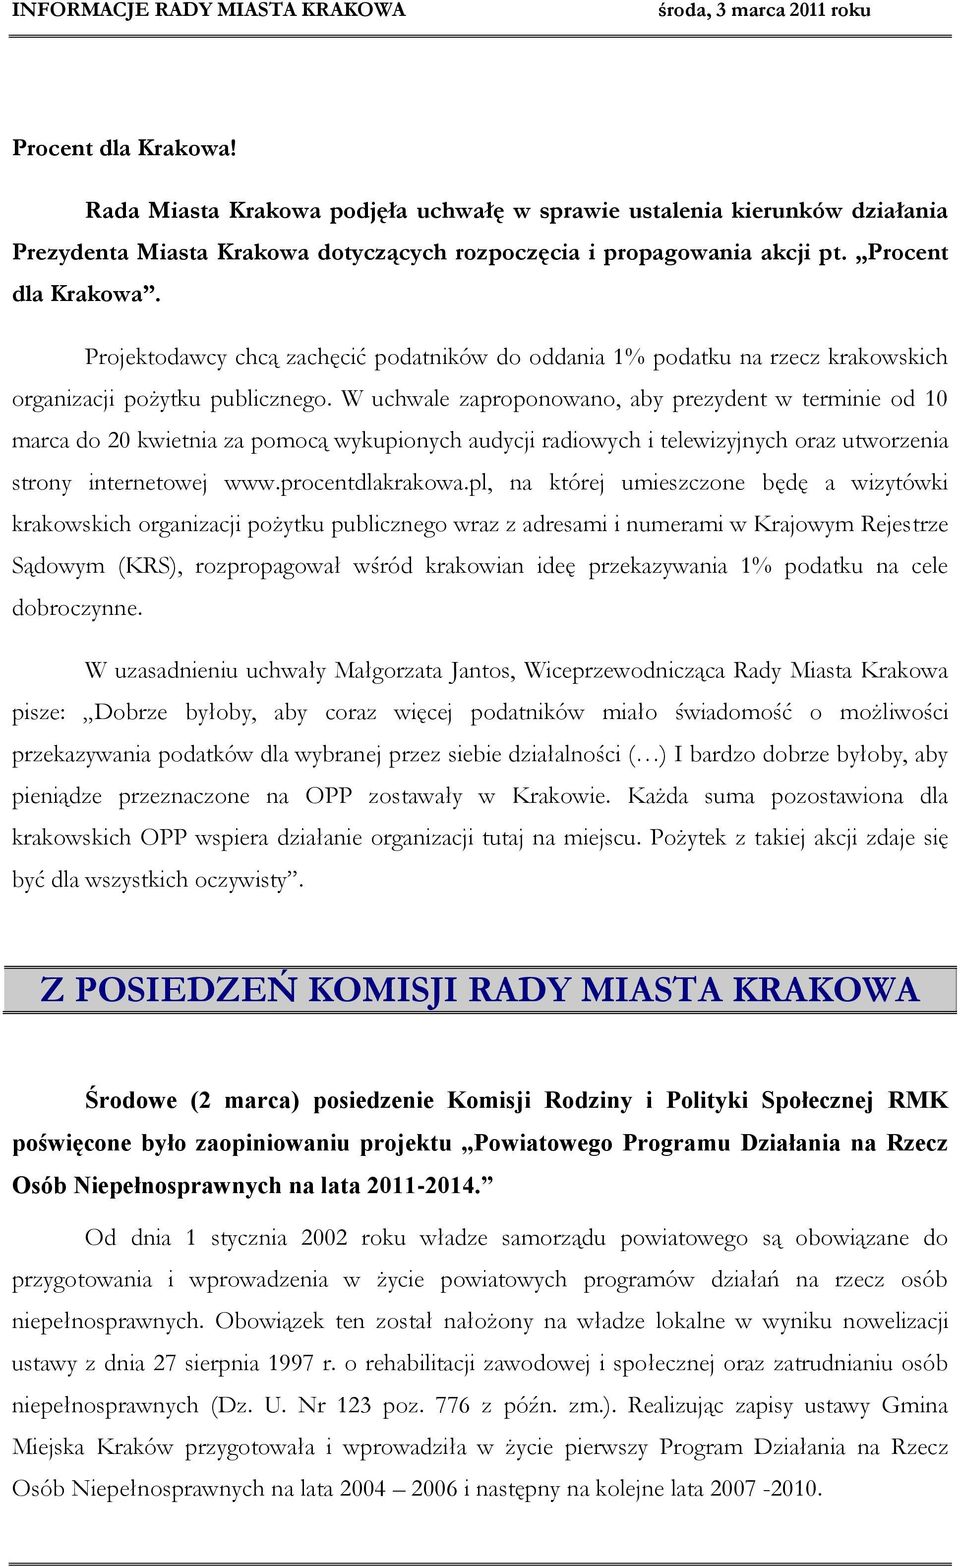 W uchwale zaproponowano, aby prezydent w terminie od 10 marca do 20 kwietnia za pomocą wykupionych audycji radiowych i telewizyjnych oraz utworzenia strony internetowej www.procentdlakrakowa.